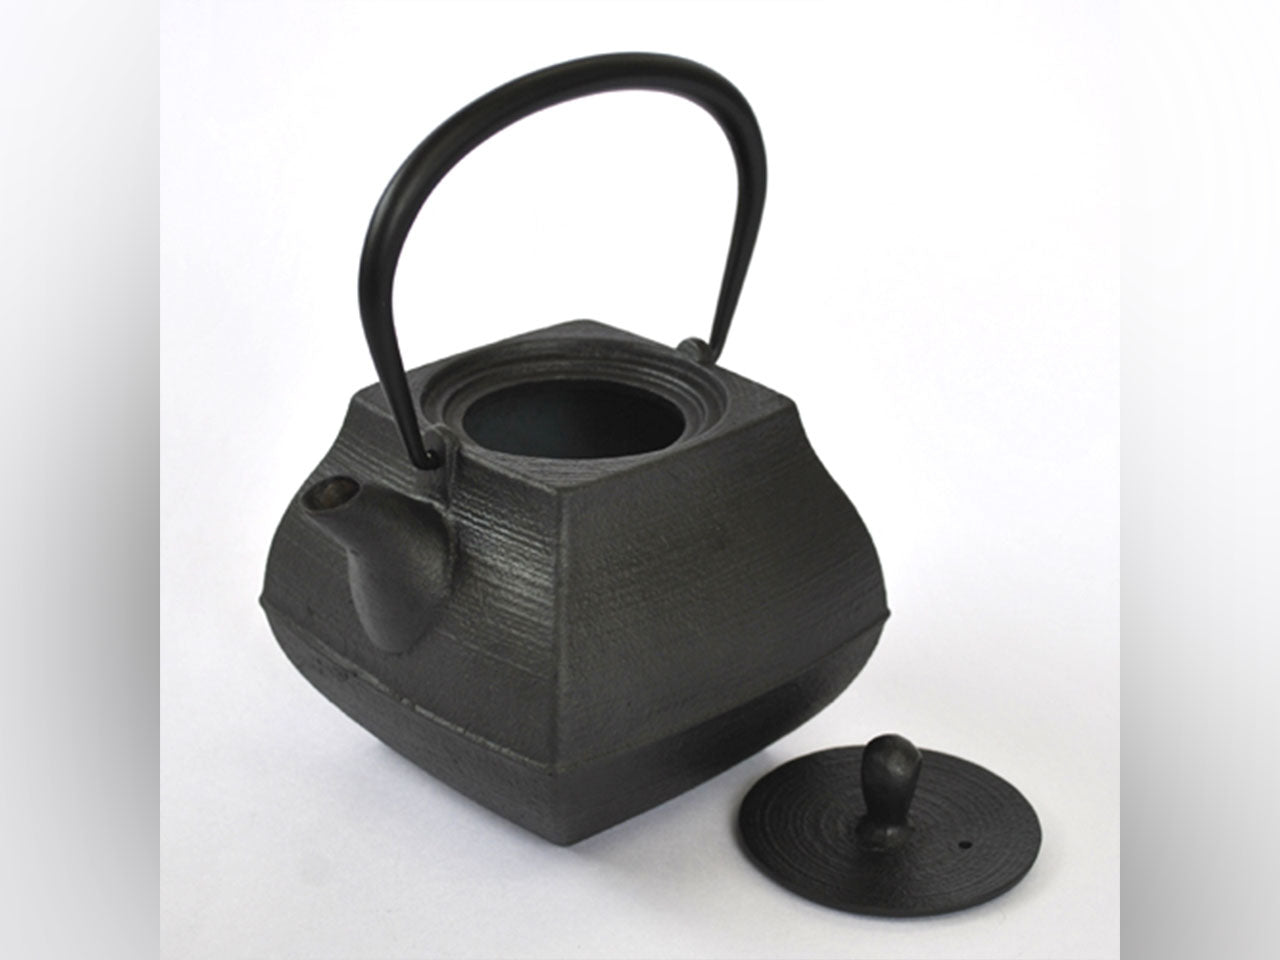 茶具 小鐵壺 石庭 0.8L 南部鐵器 金屬工藝品